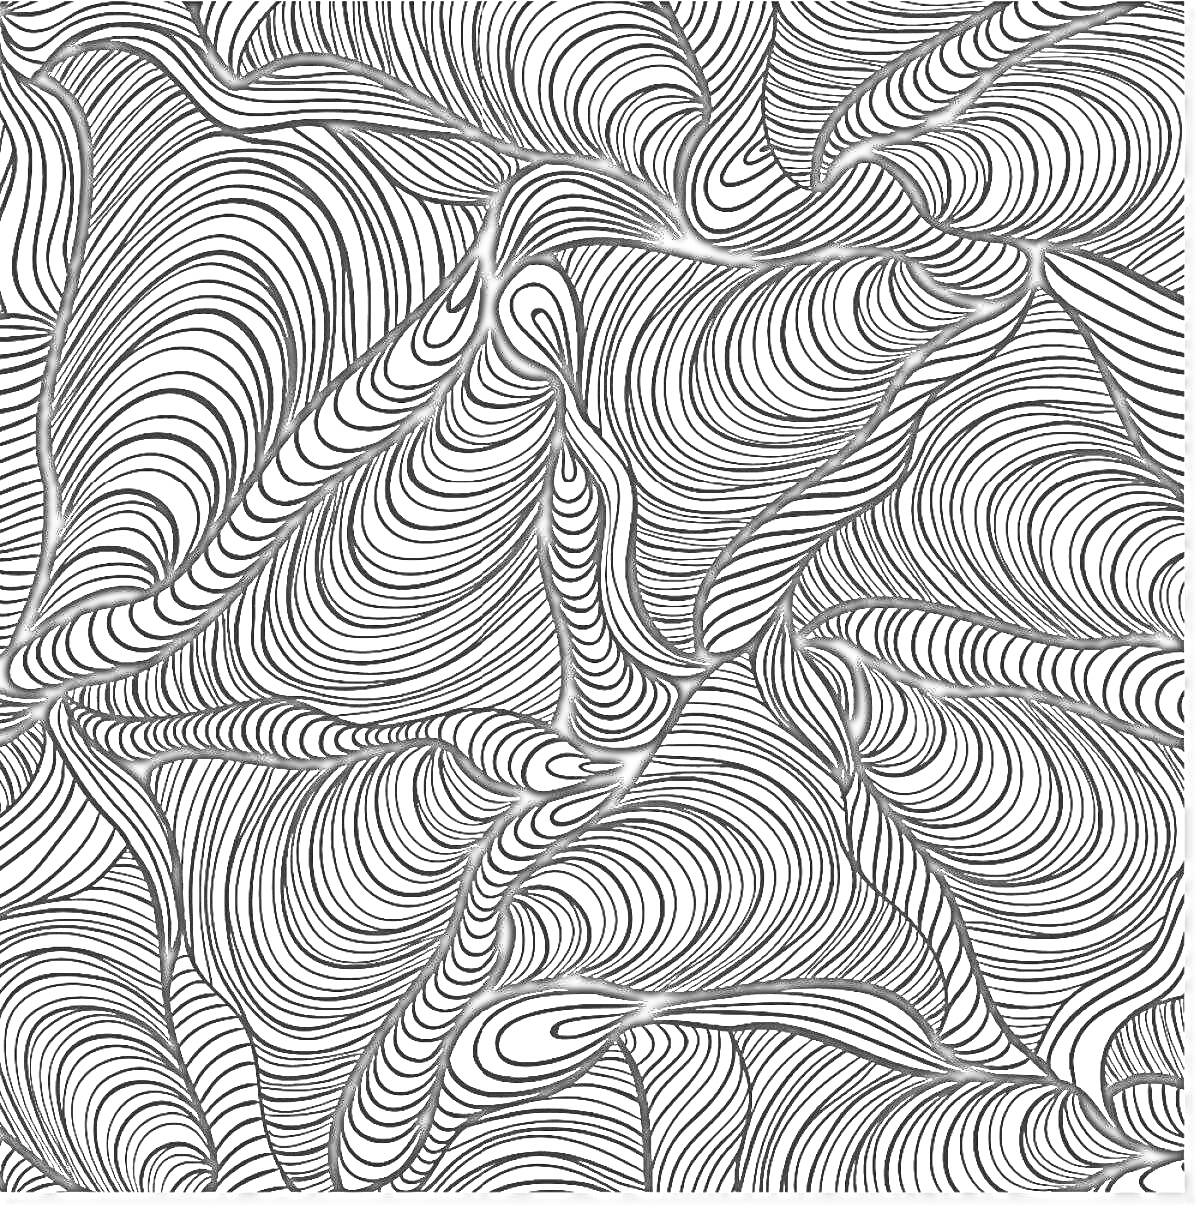 Раскраска Антистрессовая раскраска с плавными волнистыми линиями